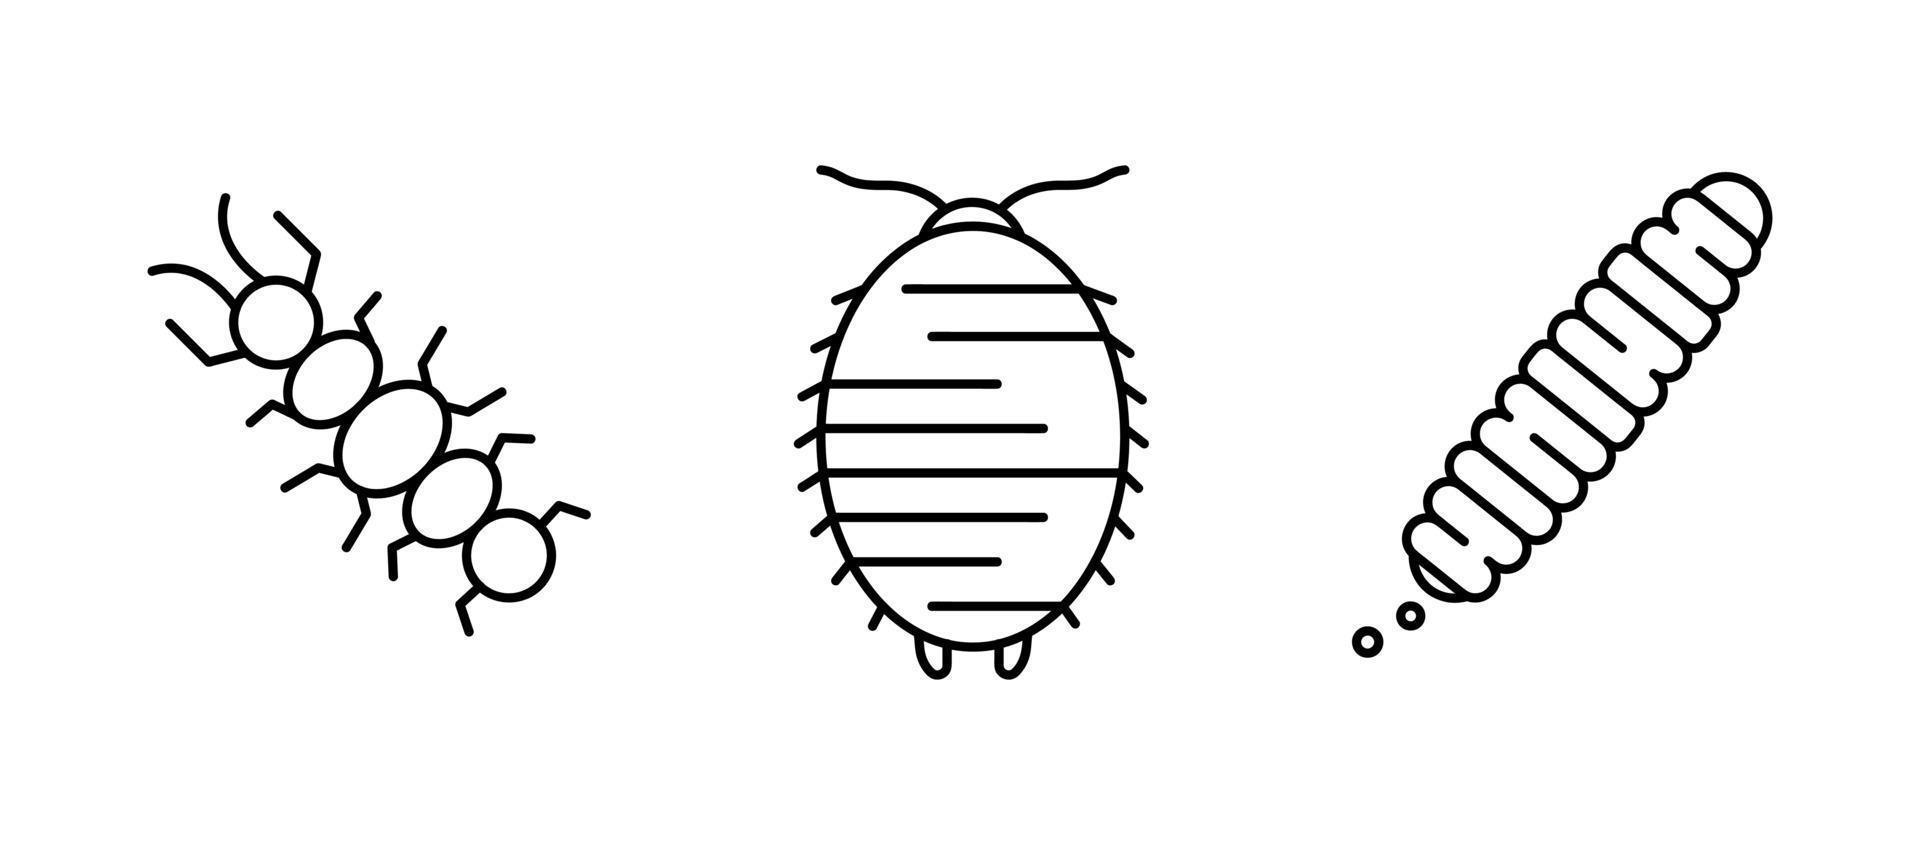 conjunto de iconos de insectos. conjunto de iconos de ciempiés, gusanos y reptiles similares. establecido para mi concepto de familia de insectos. conjunto de iconos lineales. vector